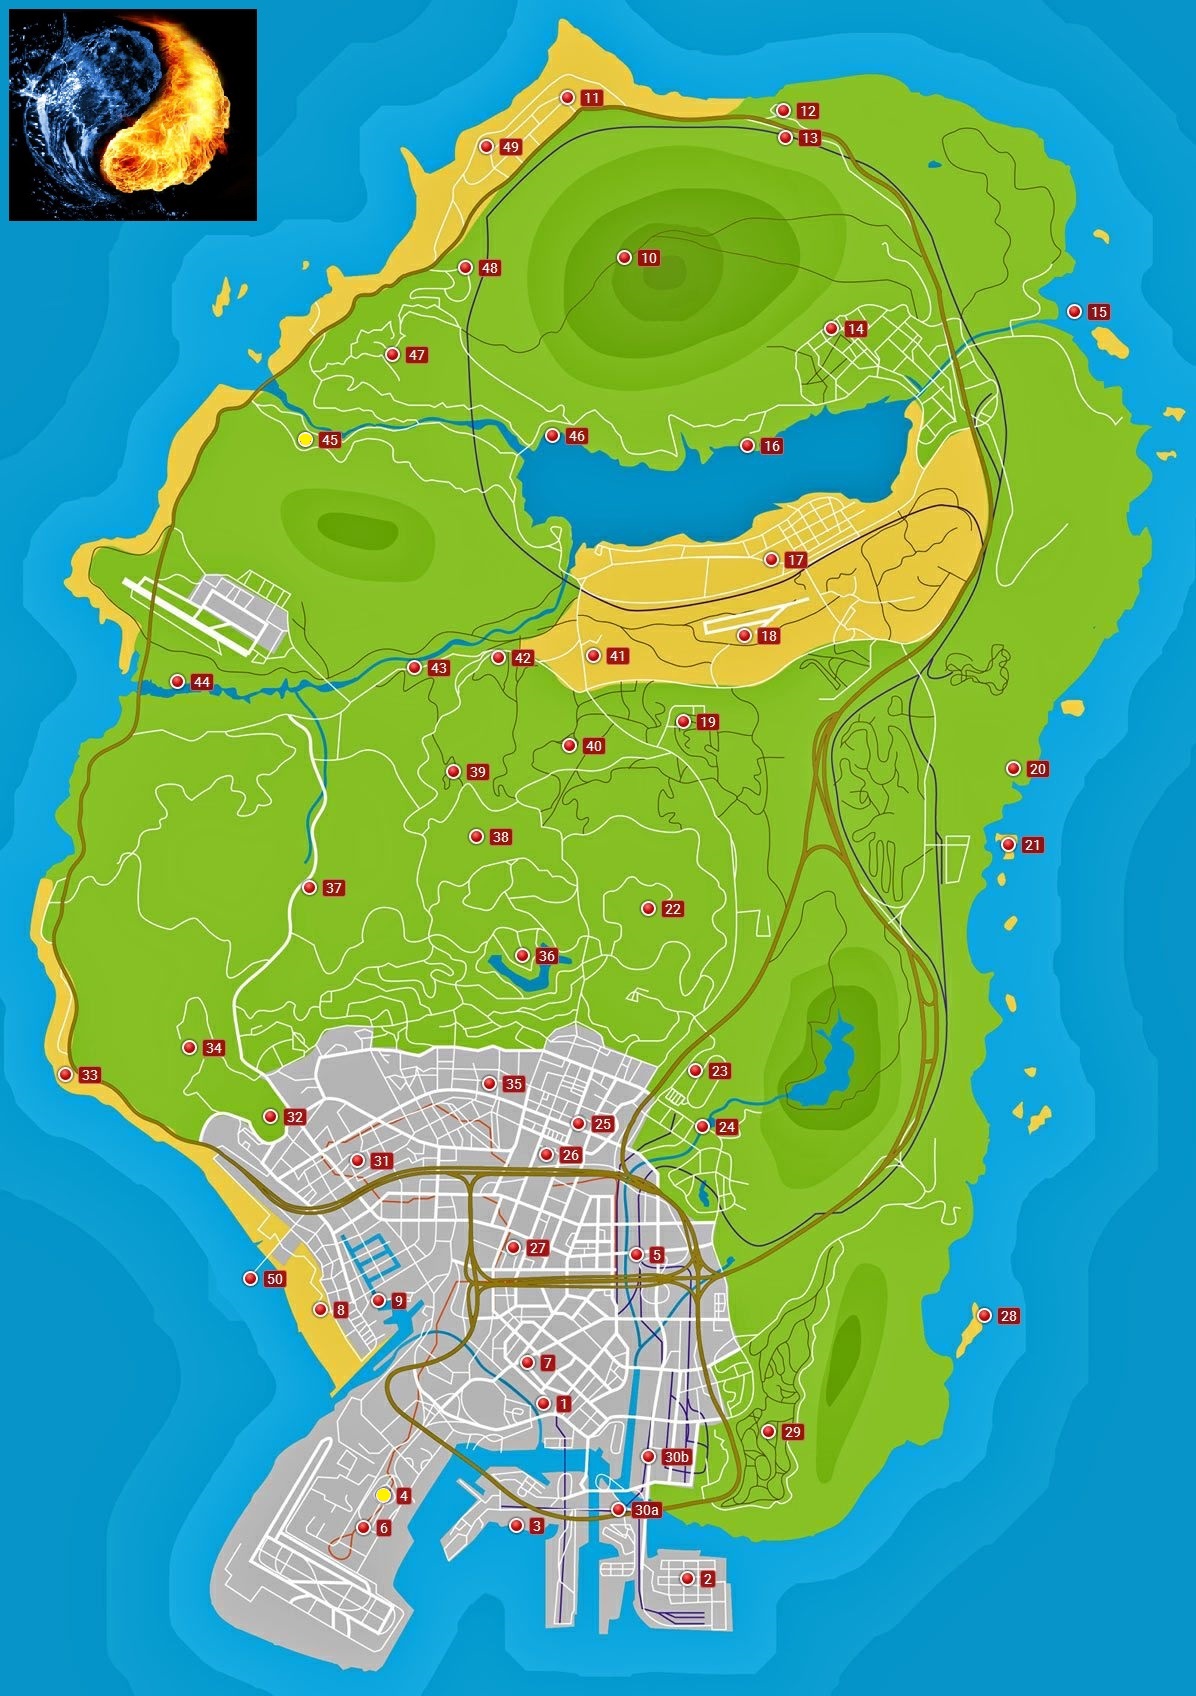 Descubra os 16 lugares secretos de GTA 5 - Liga dos Games